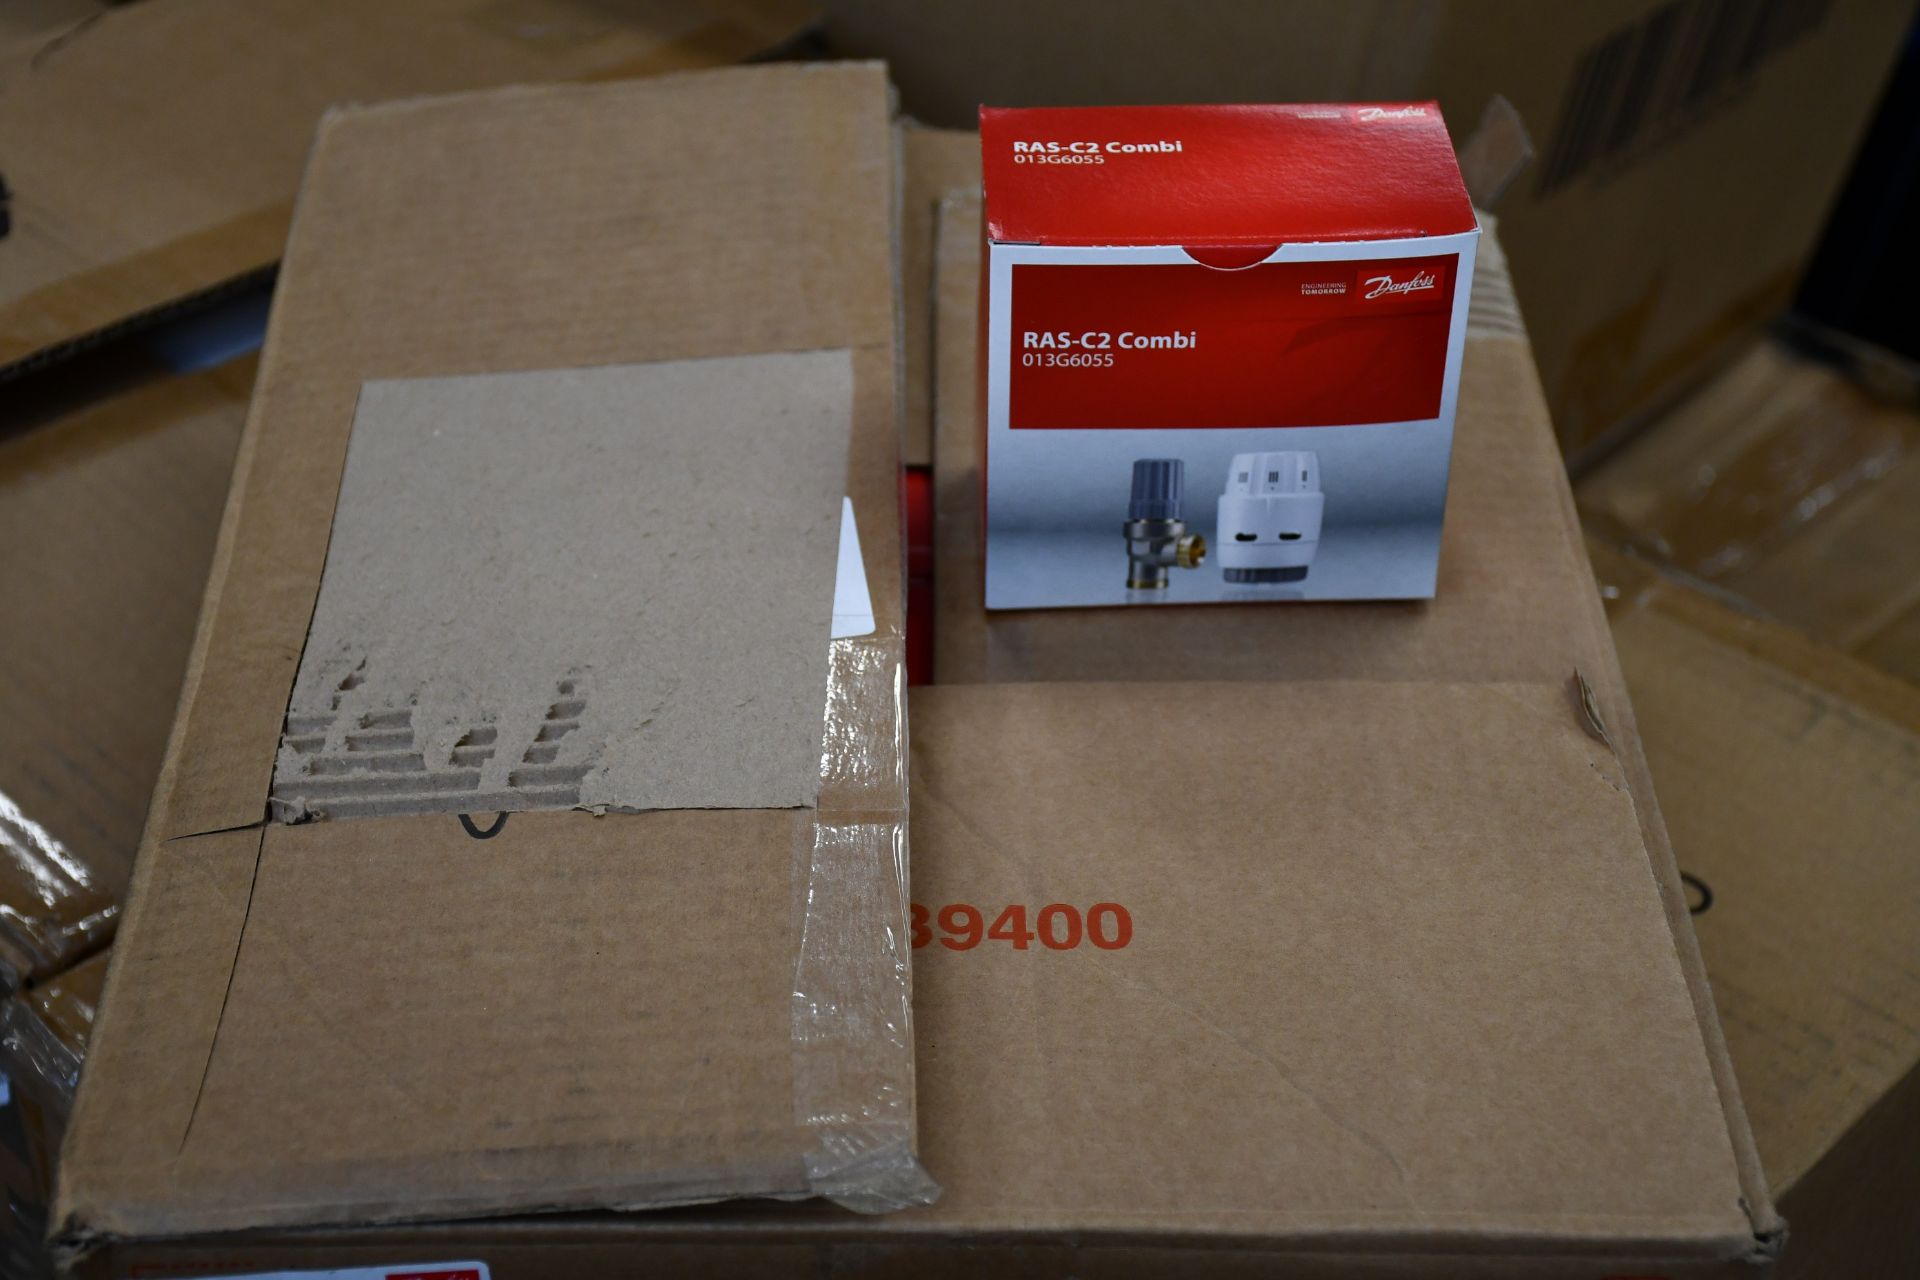 Twenty boxed as new Danfoss RAS-C2 Combi Angled 10mm Valves (013G6055).